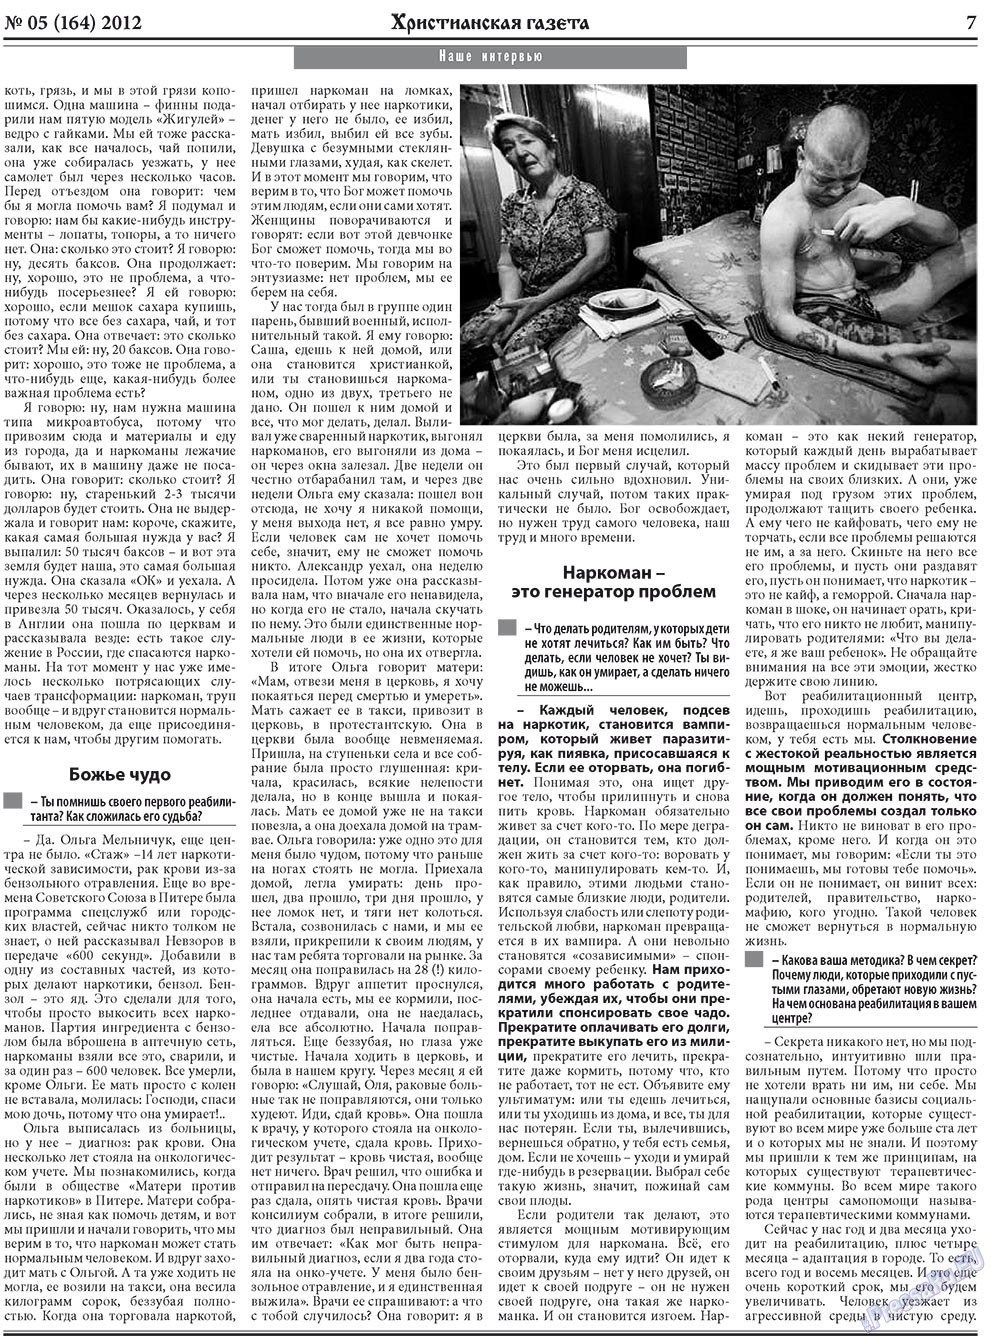 Христианская газета, газета. 2012 №5 стр.7